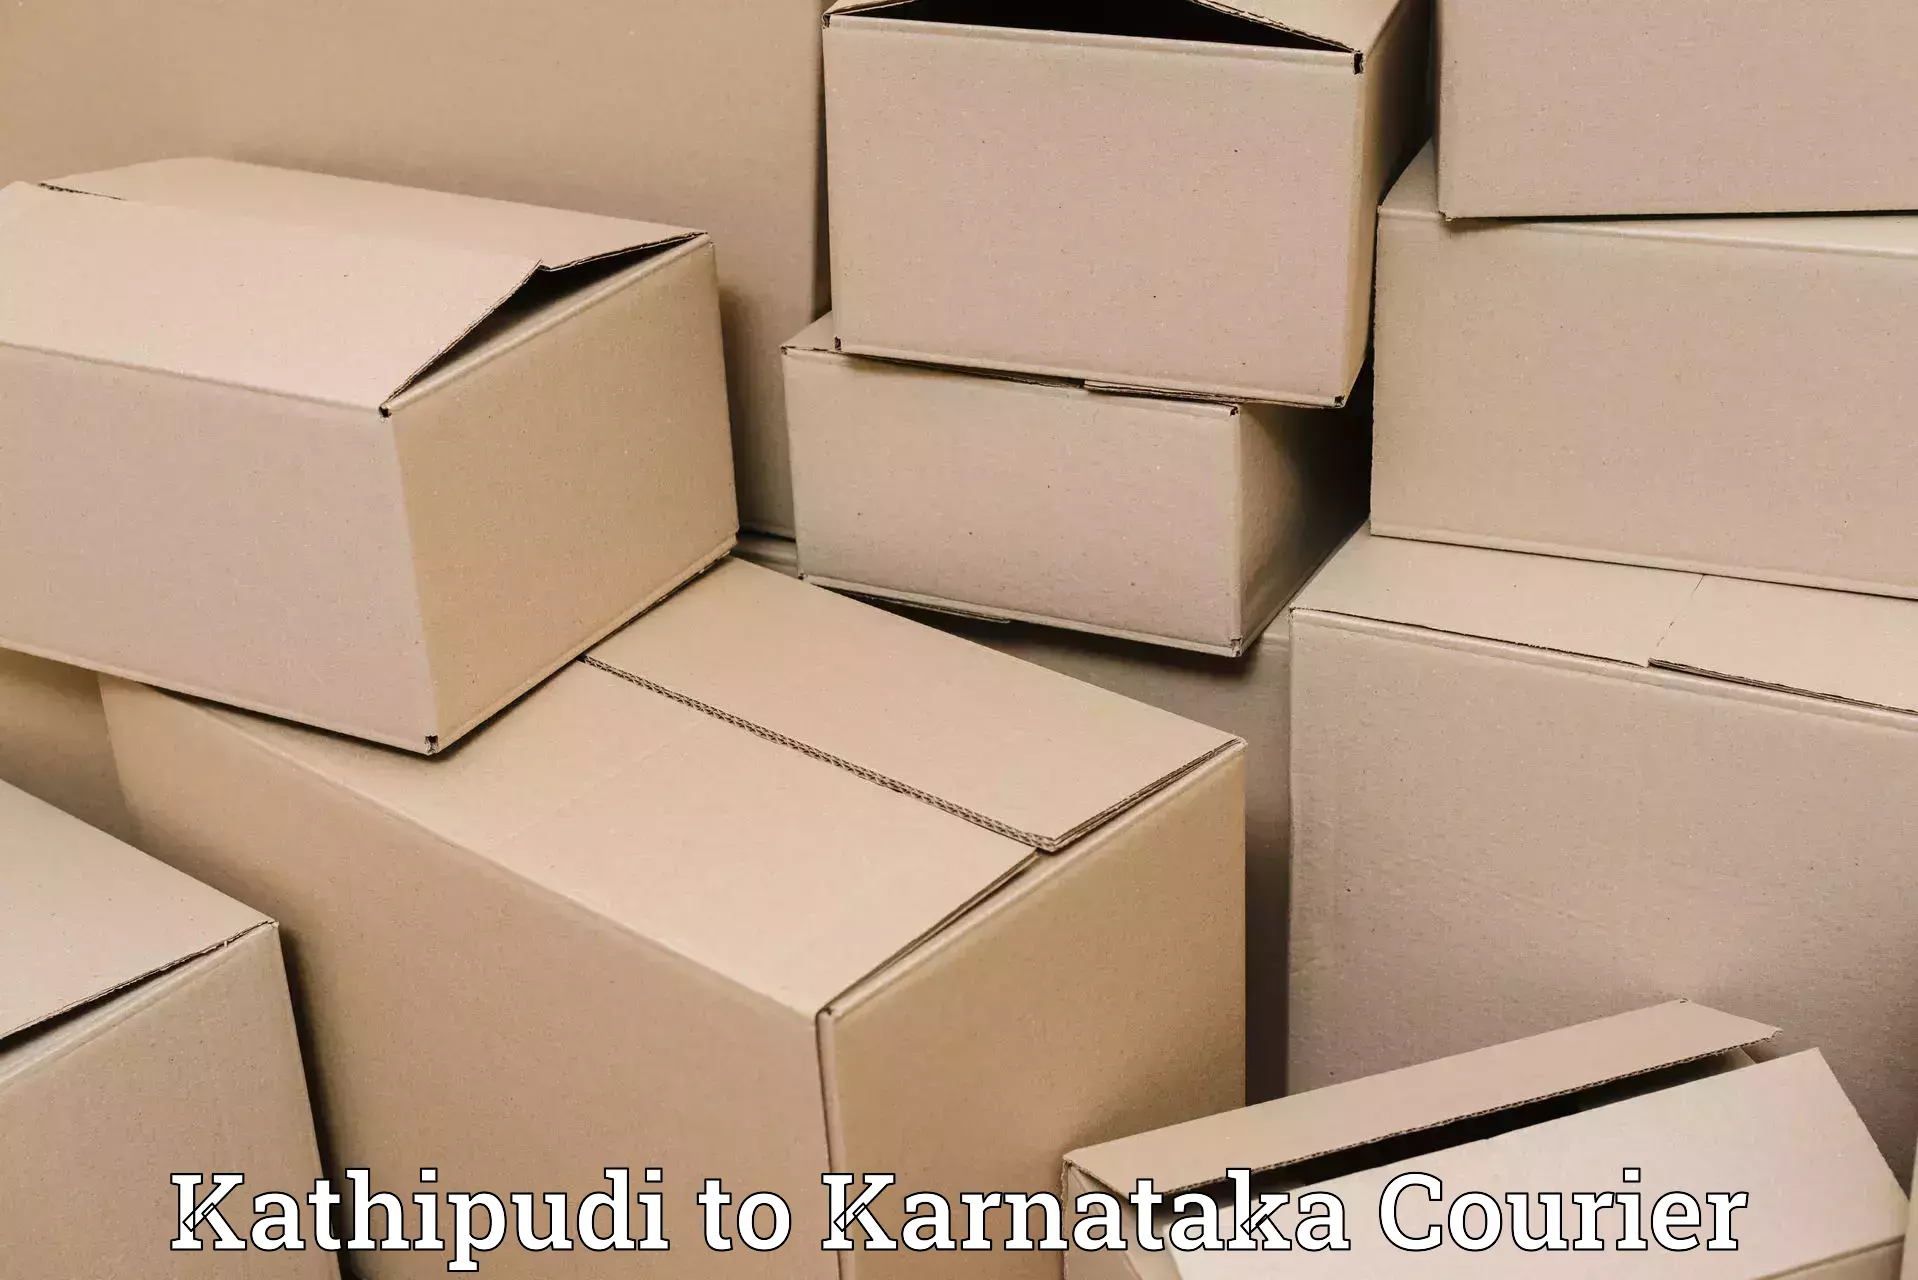 Express logistics Kathipudi to Mangalore